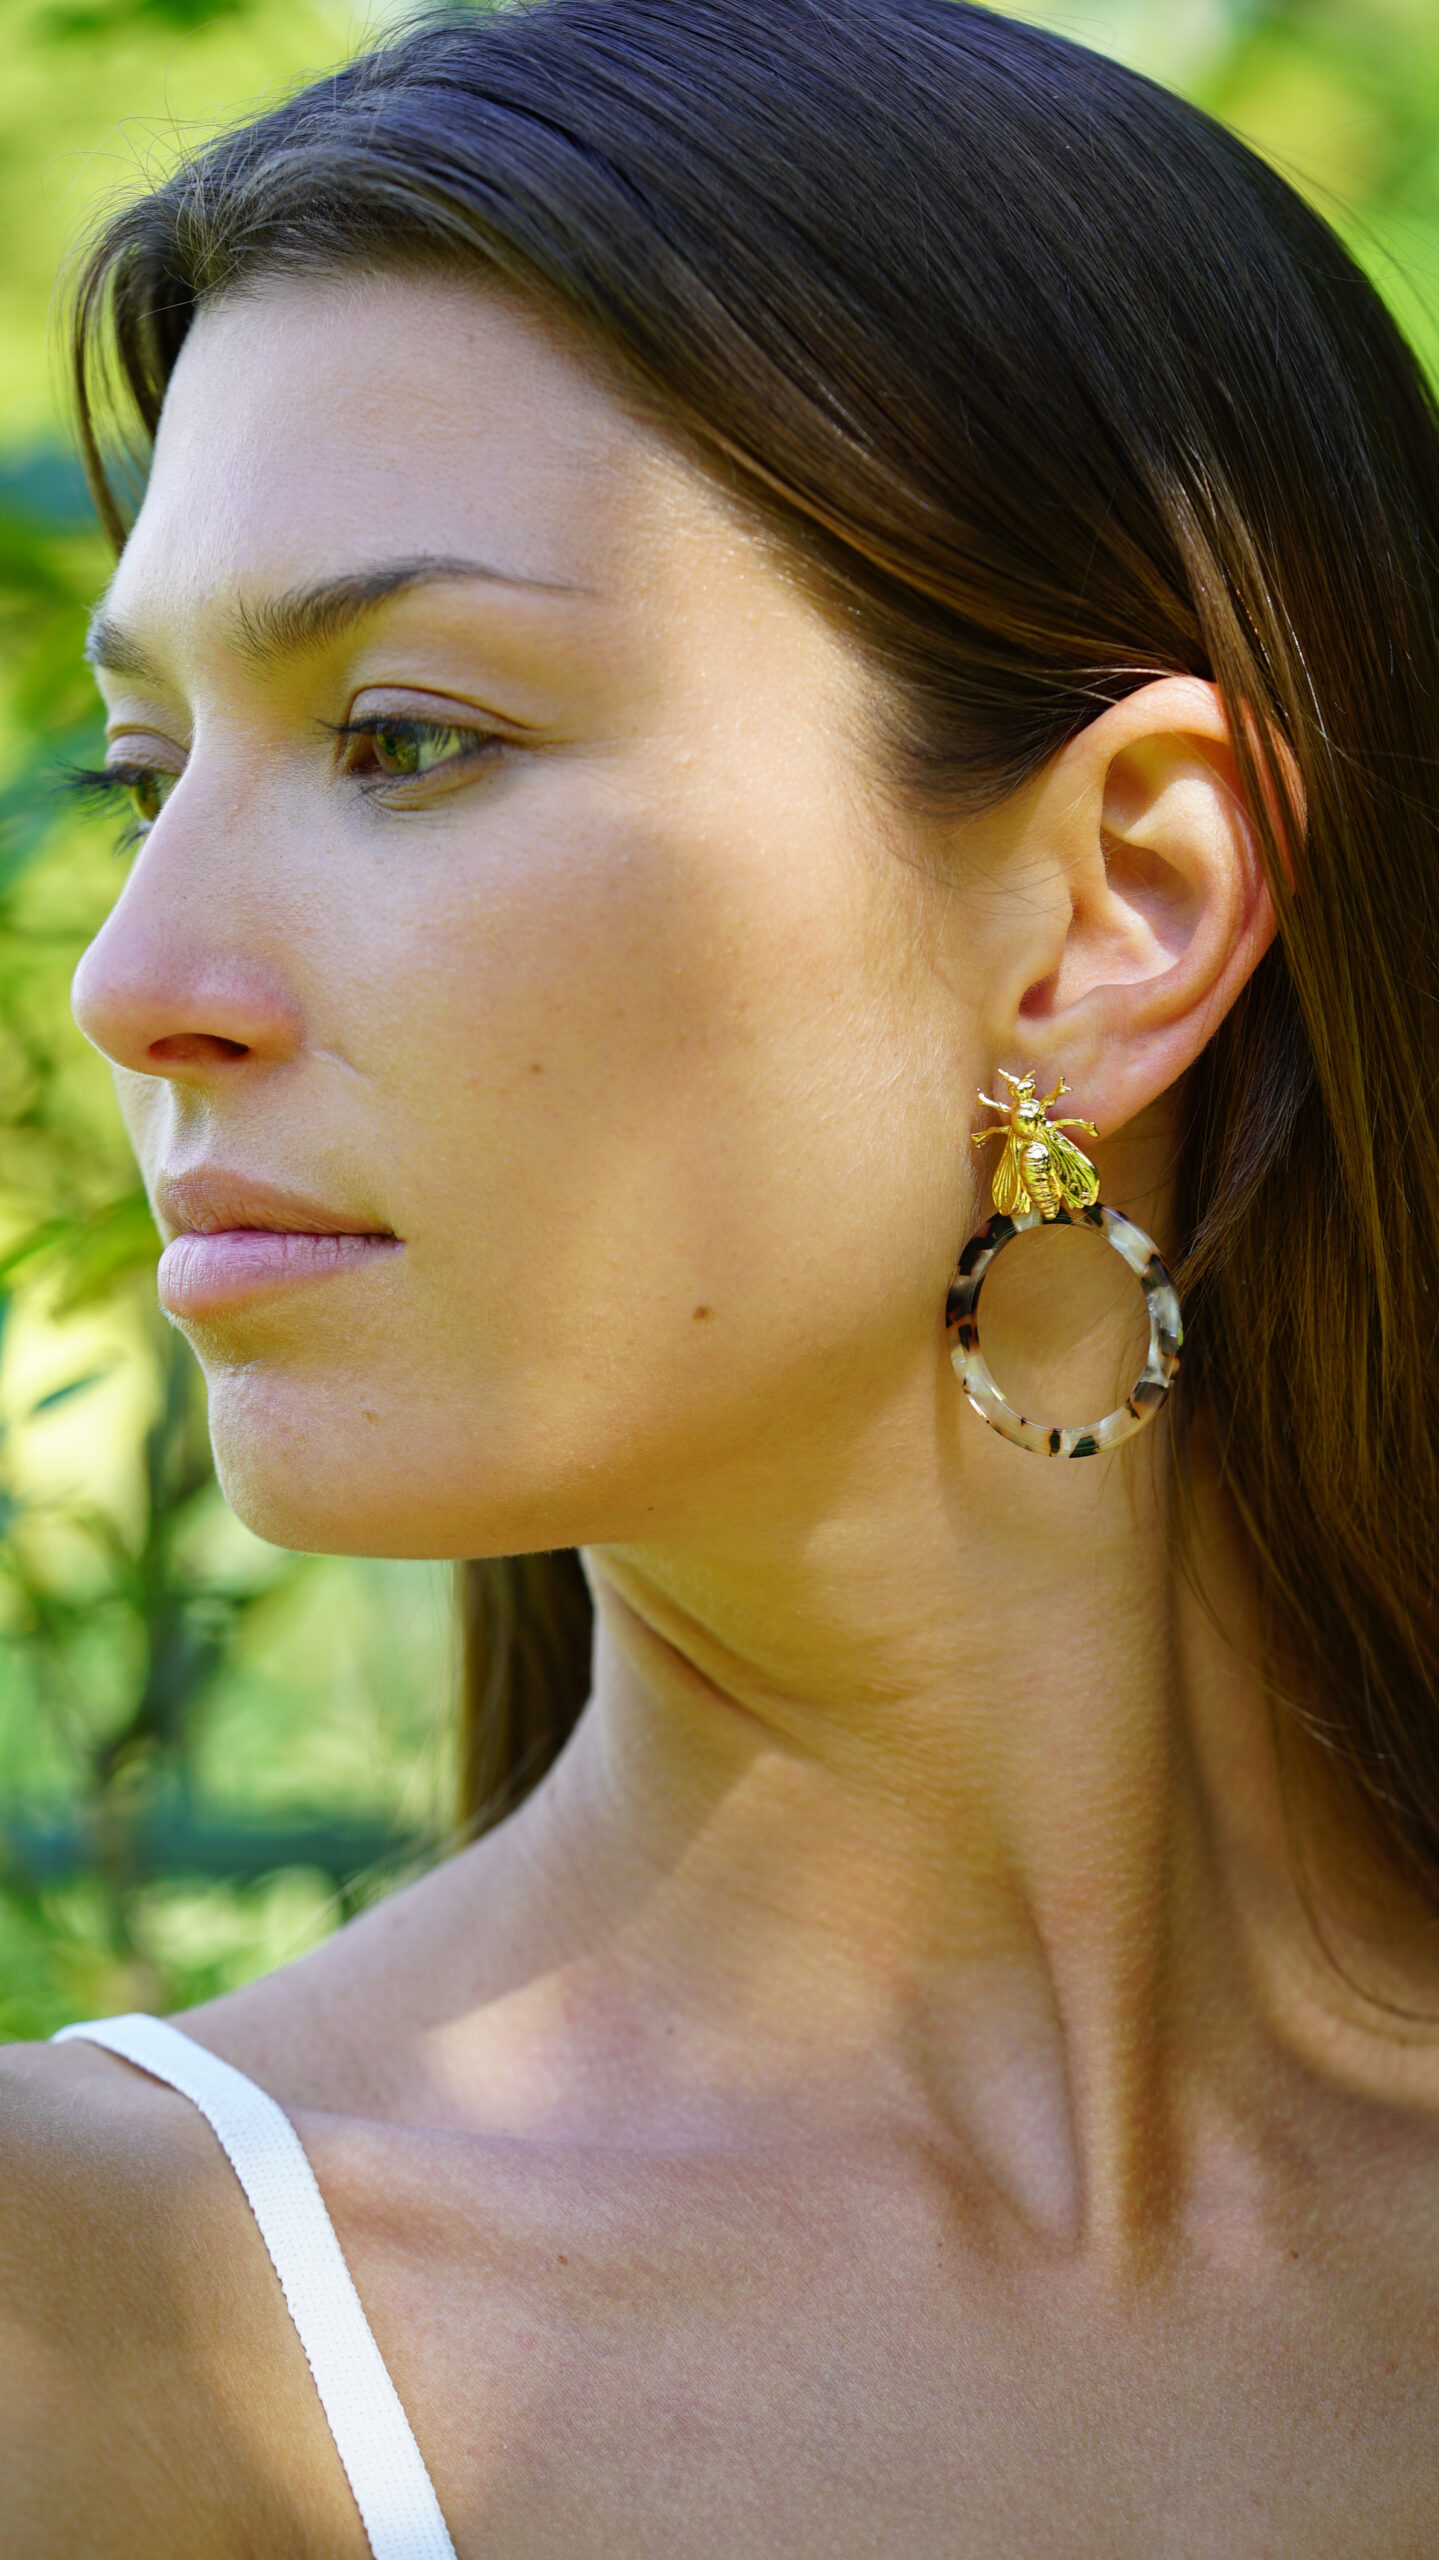 Megumi earrings